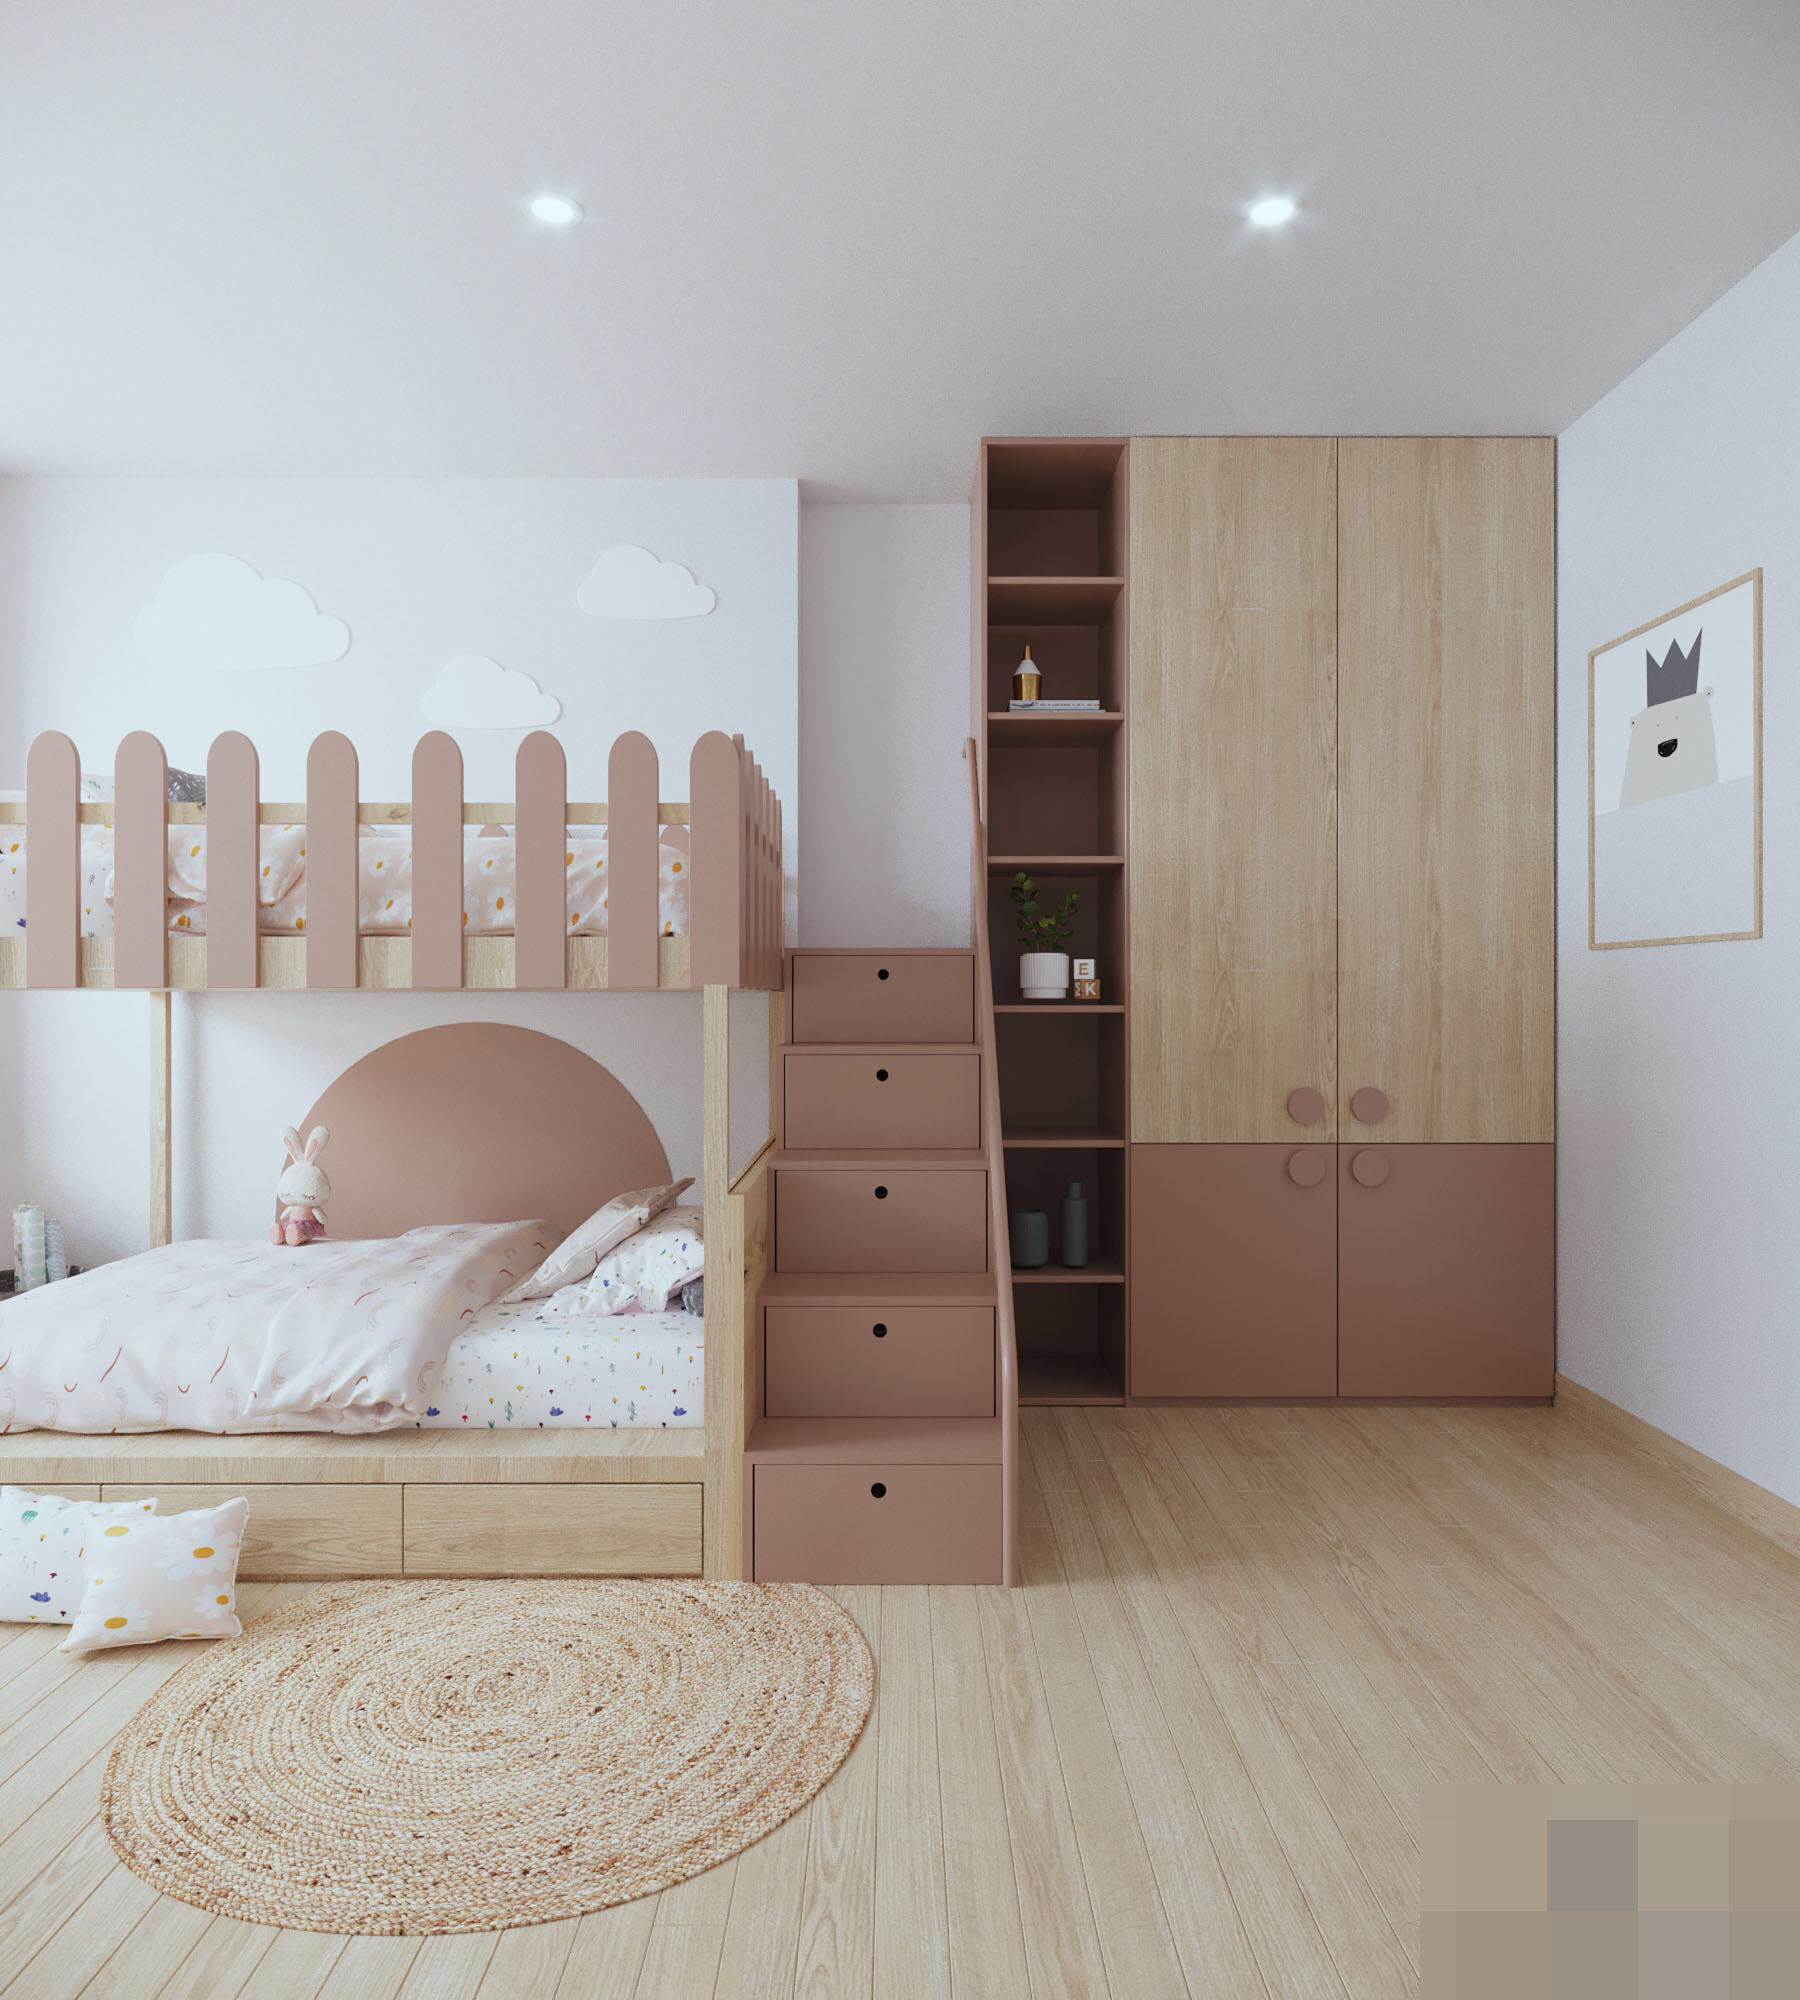 Chút biến tấu cho căn hộ nhỏ, không gian rộng hơn nhờ nội thất thông minh - Ảnh 12.